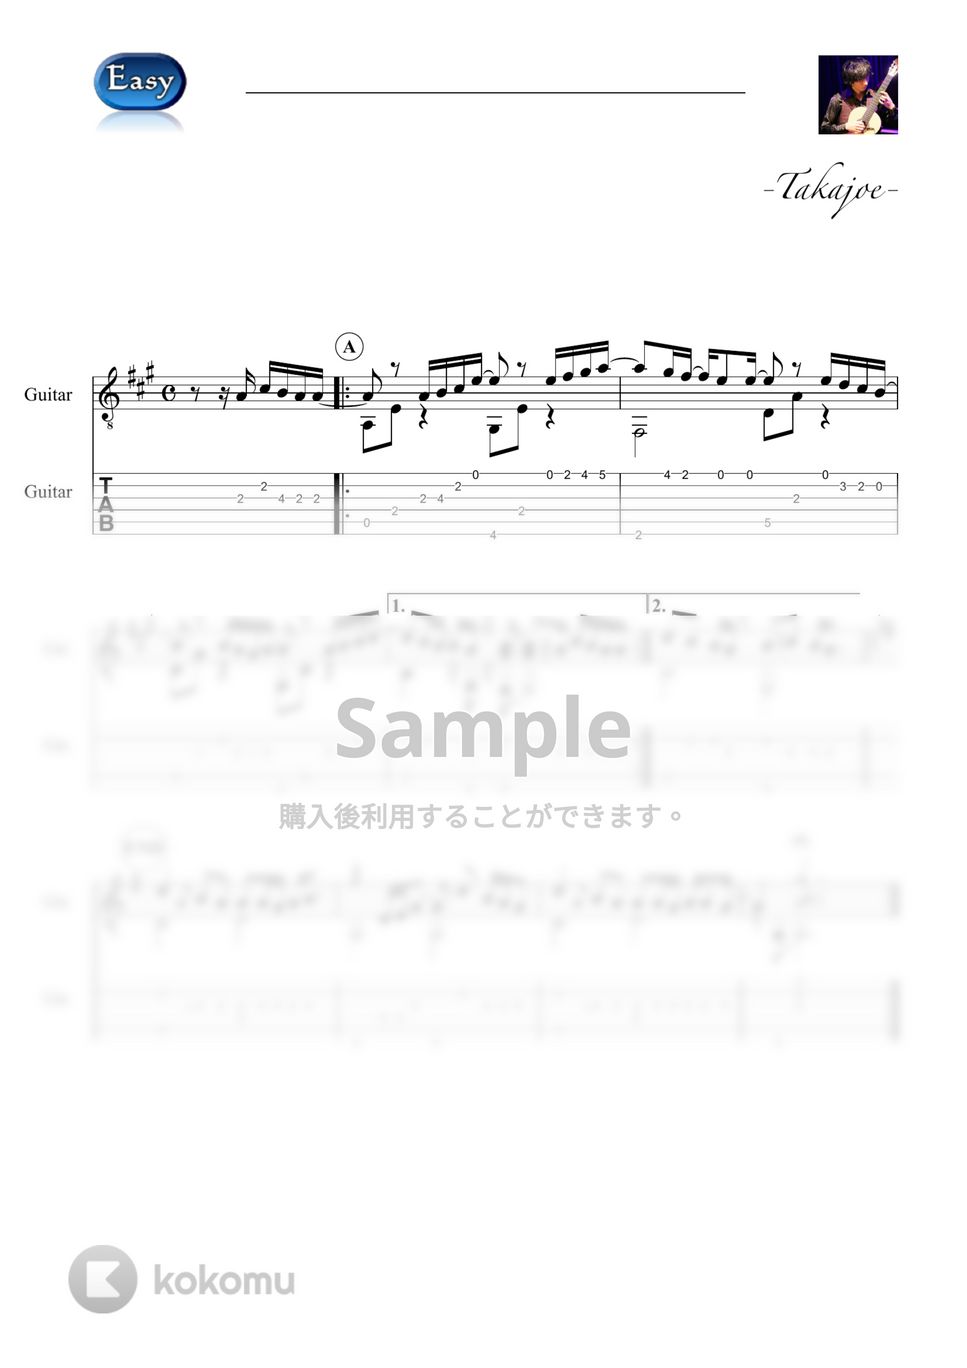 優里 - インフィニティ (Easy&Short Ver.) by 鷹城-Takajoe-